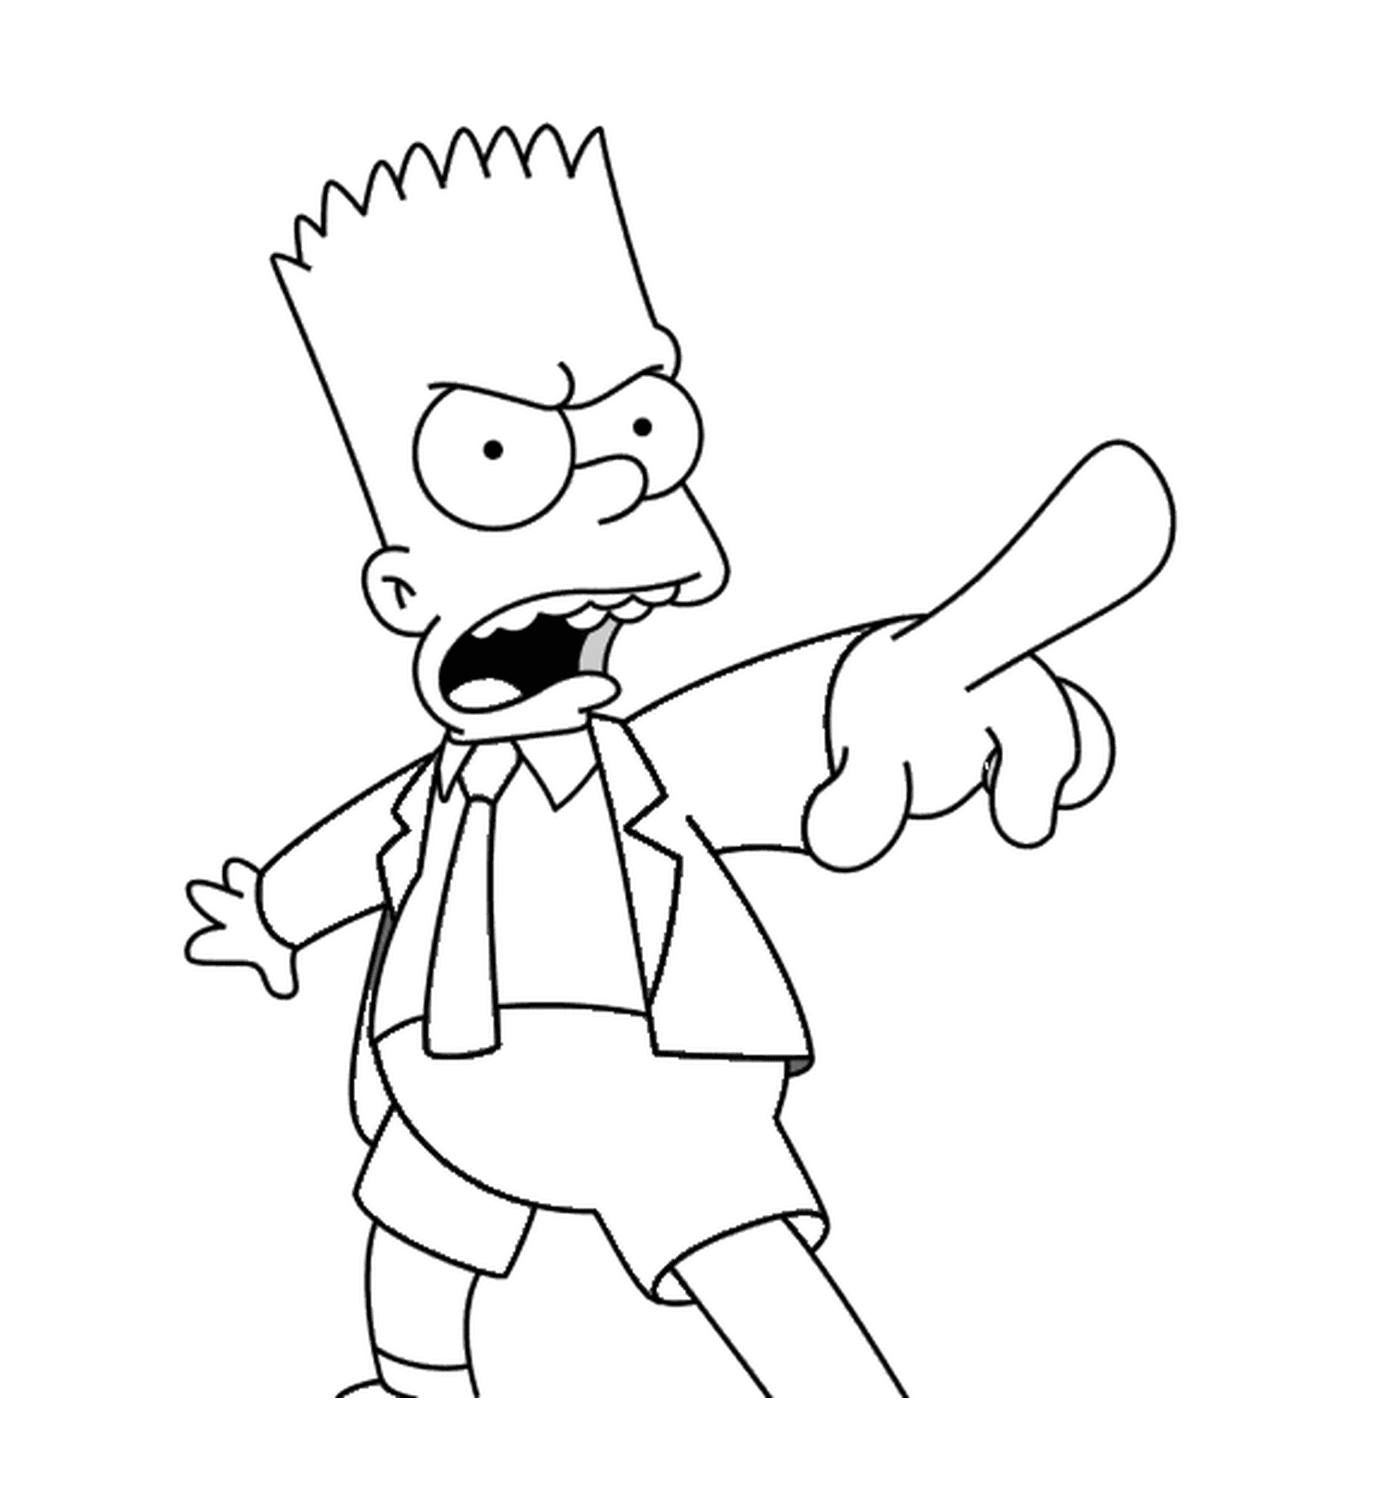  Барт злится на галстук 